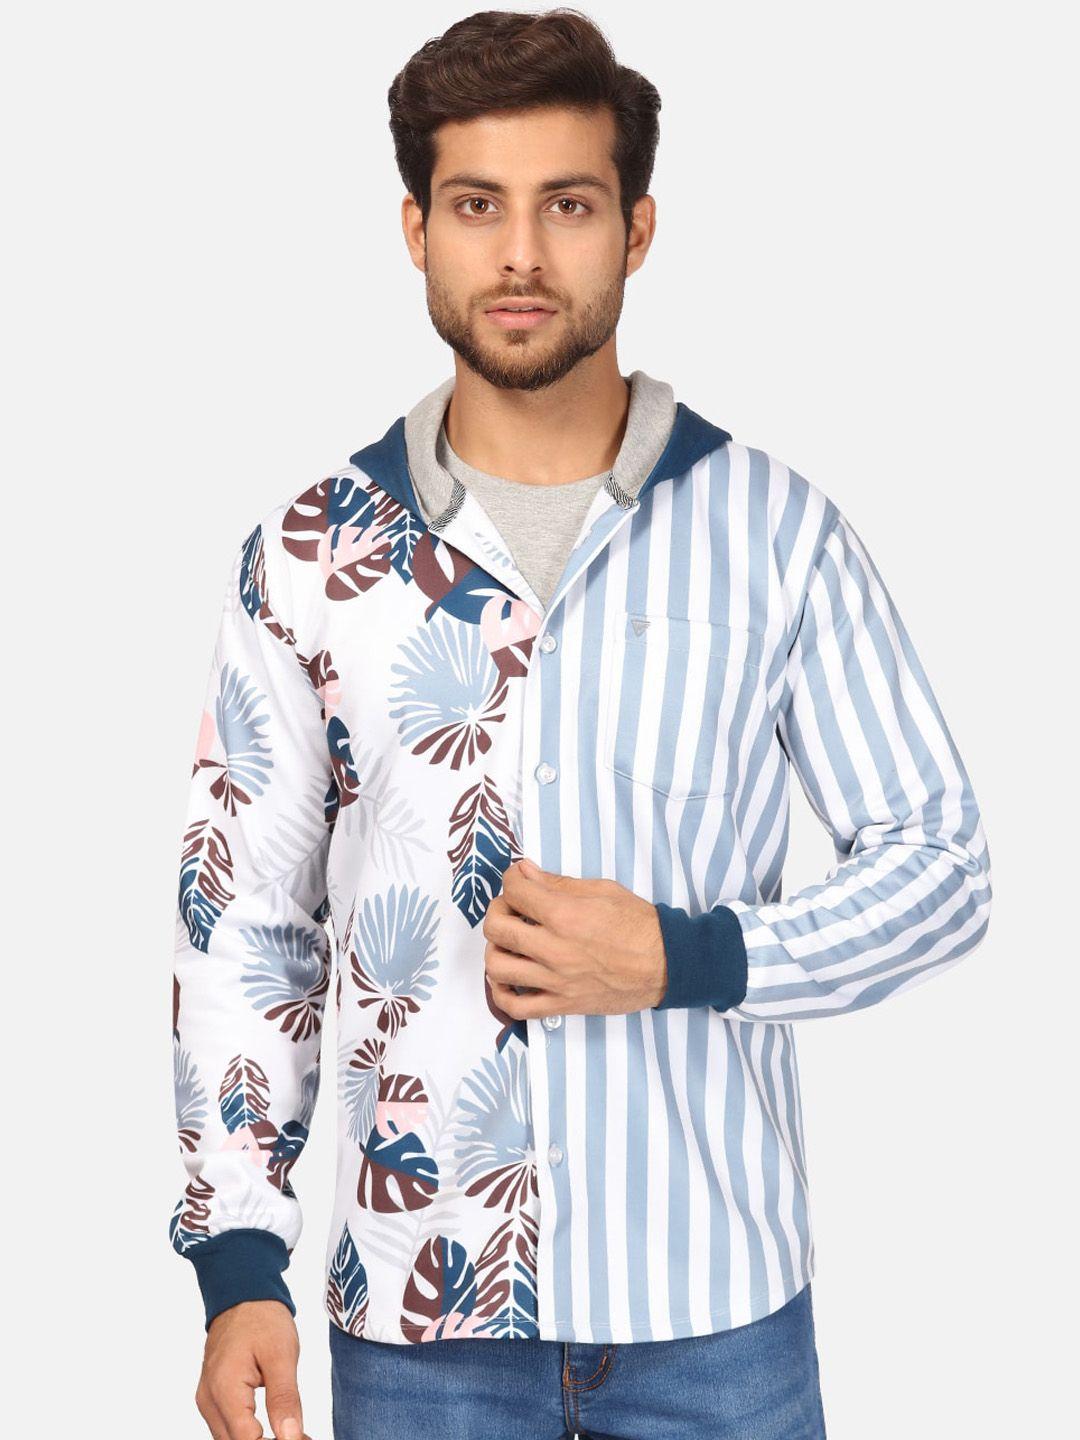 bullmer-men-blue-striped-fleece-hooded-sweatshirt